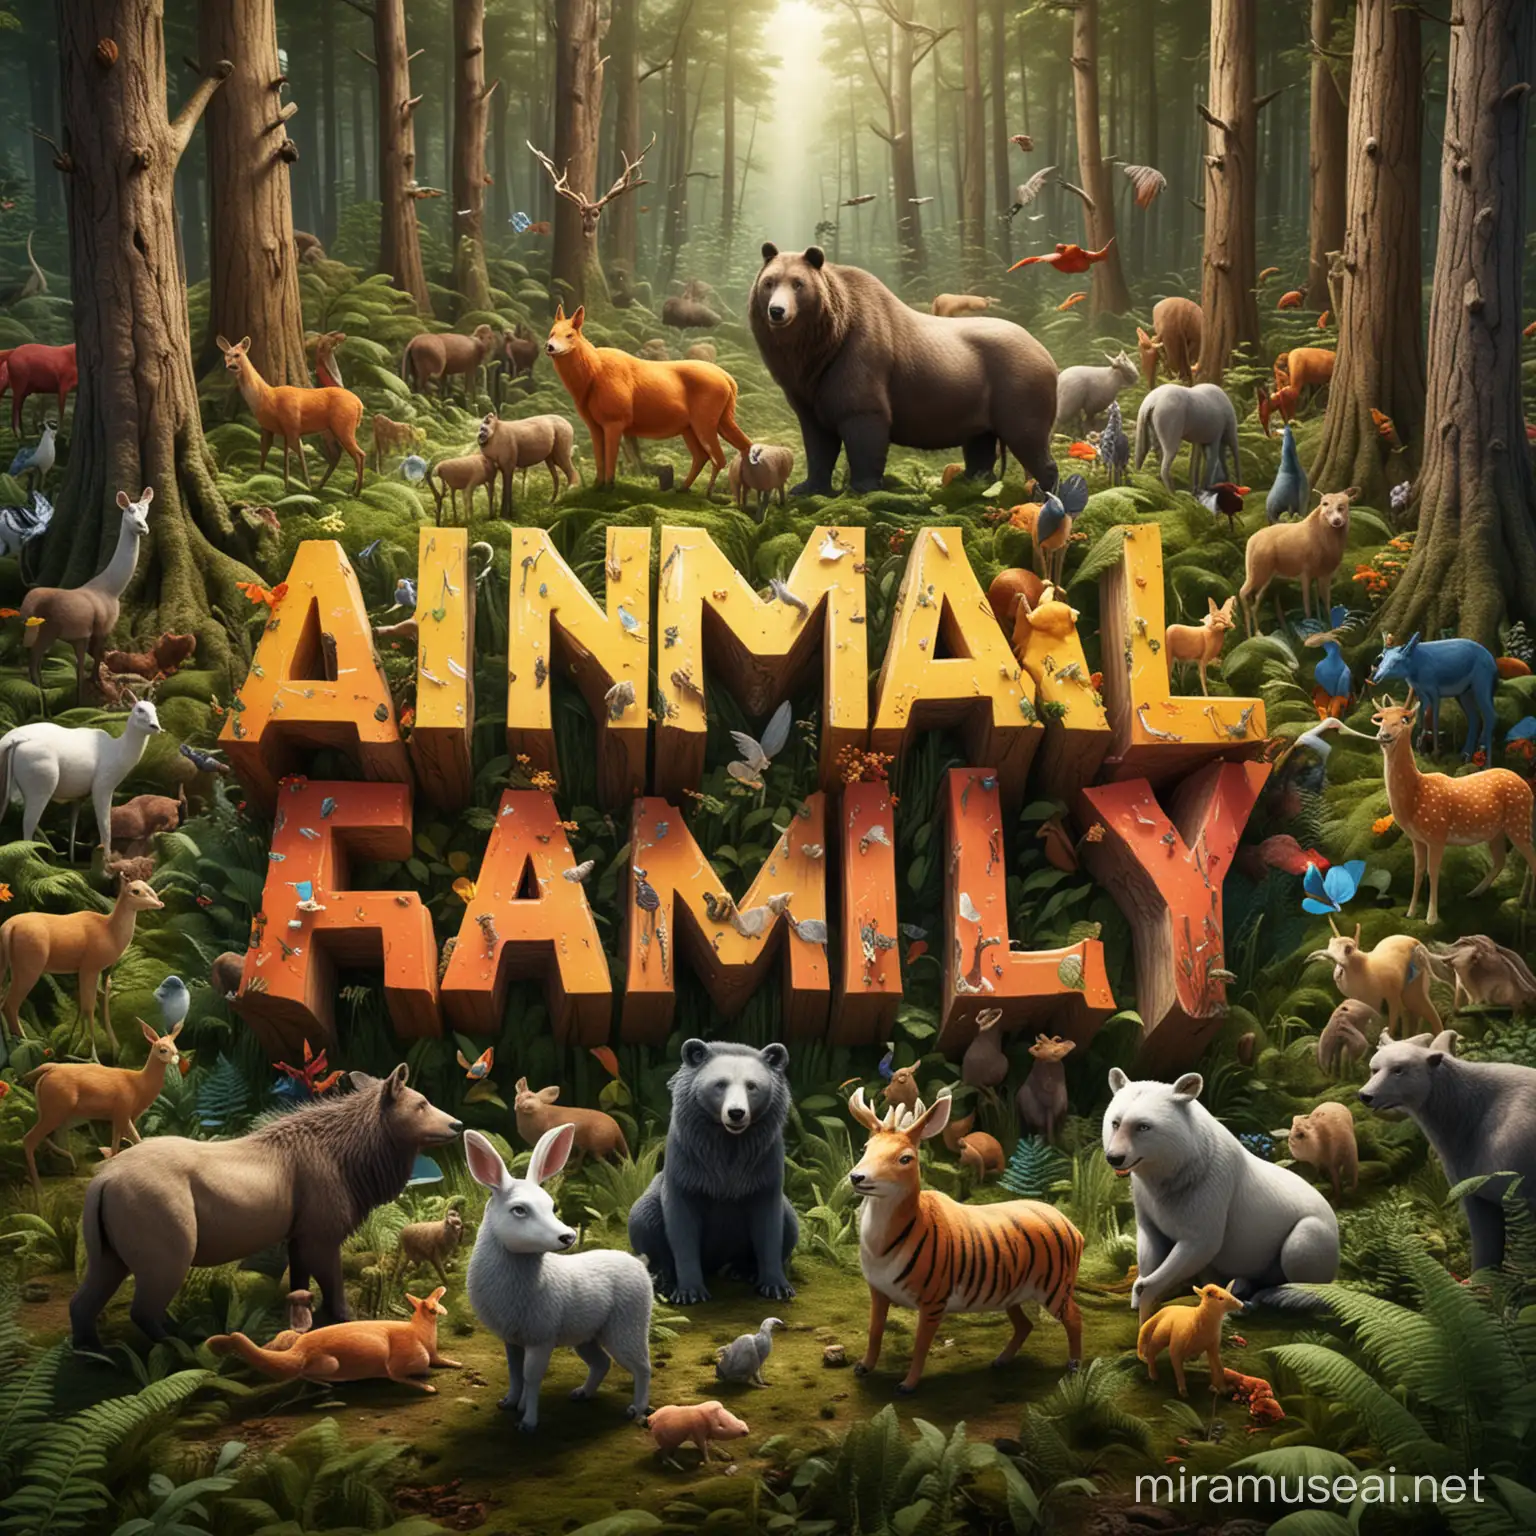 Vibrant Forest Gathering Animal Family Unites in HighEnergy Scene